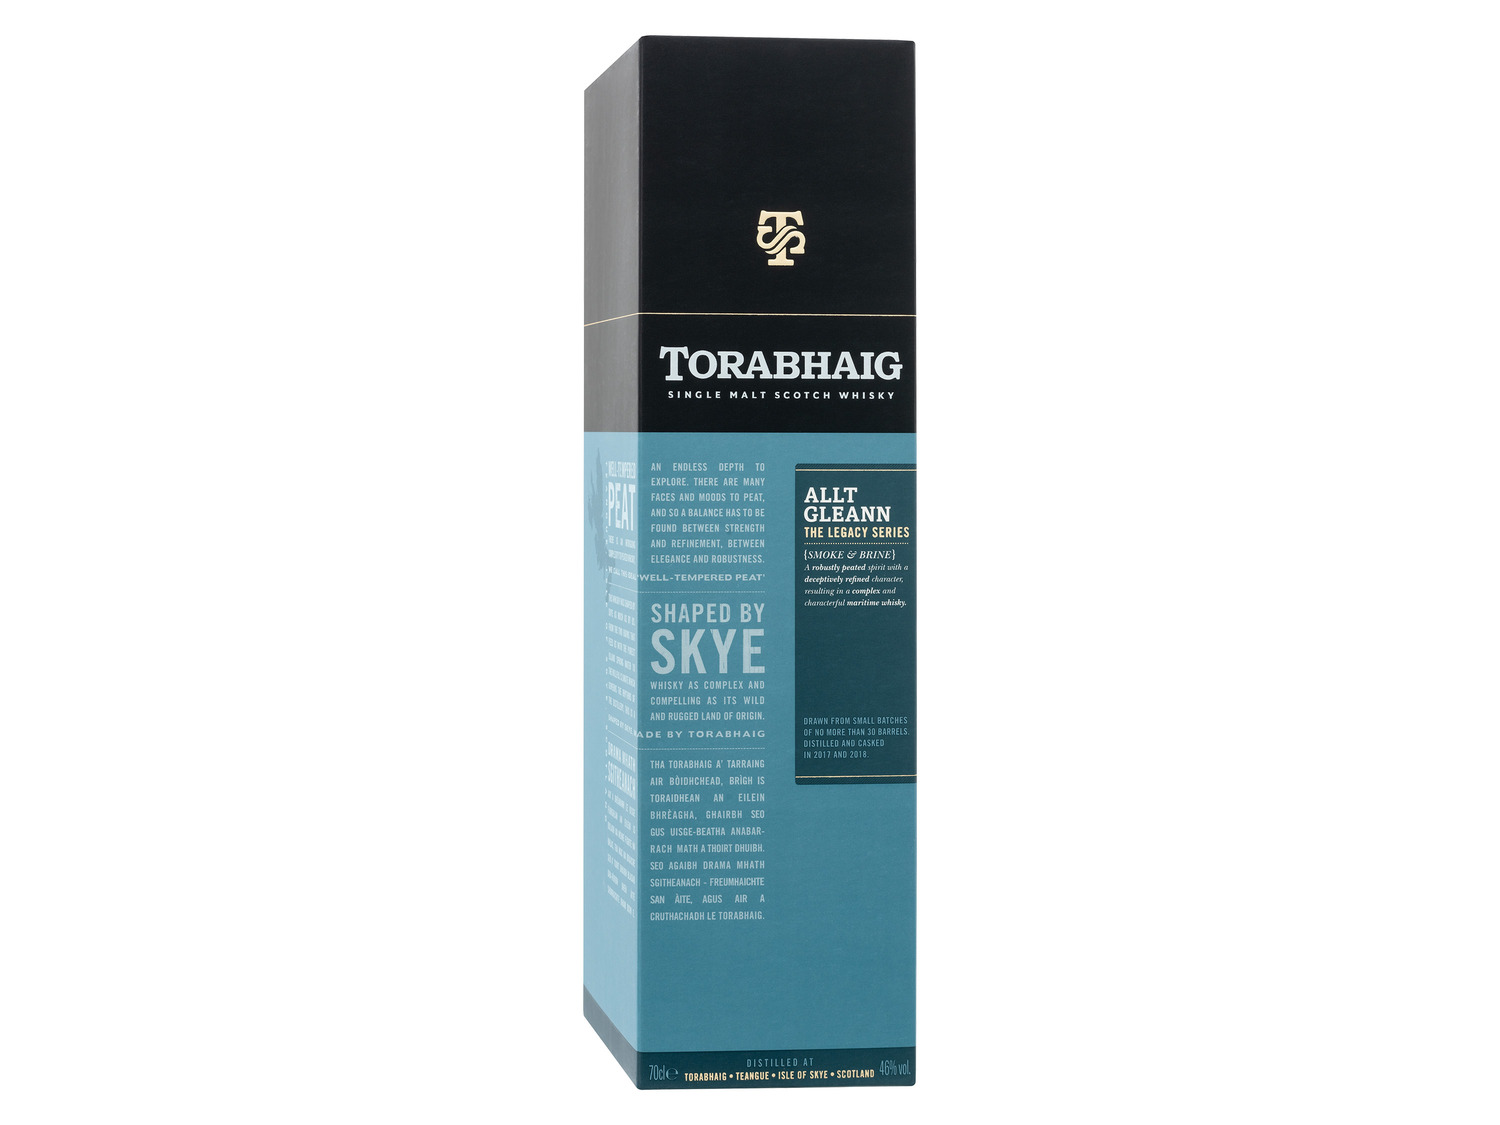 Malt Torabhaig Whisky Le… Single Gleann Scotch The Allt